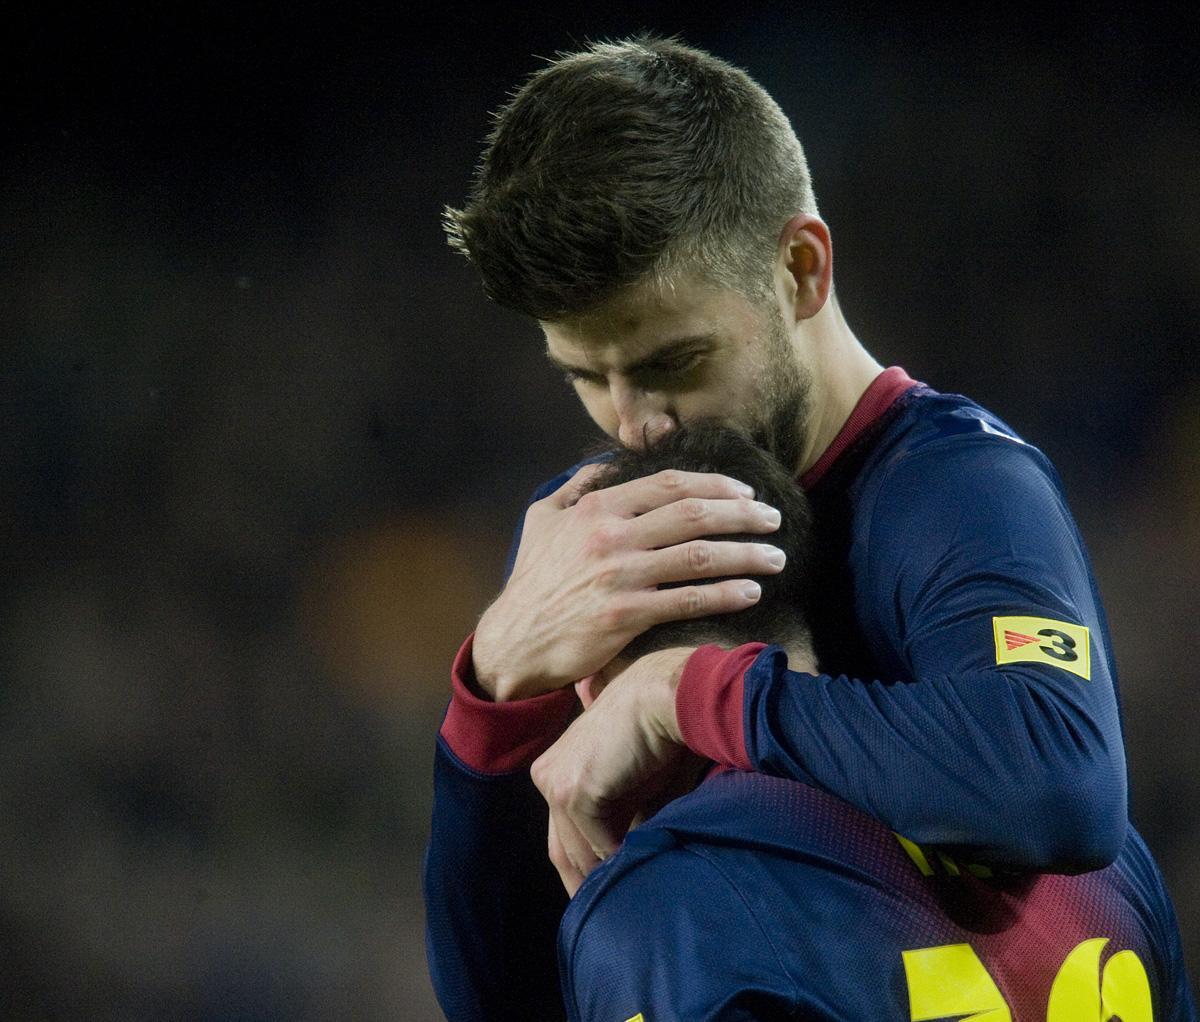  Partido de liga entre el FC Barcelona y el Rayo Vallecano, Piqué felicita a Messi tras su segundo gol.